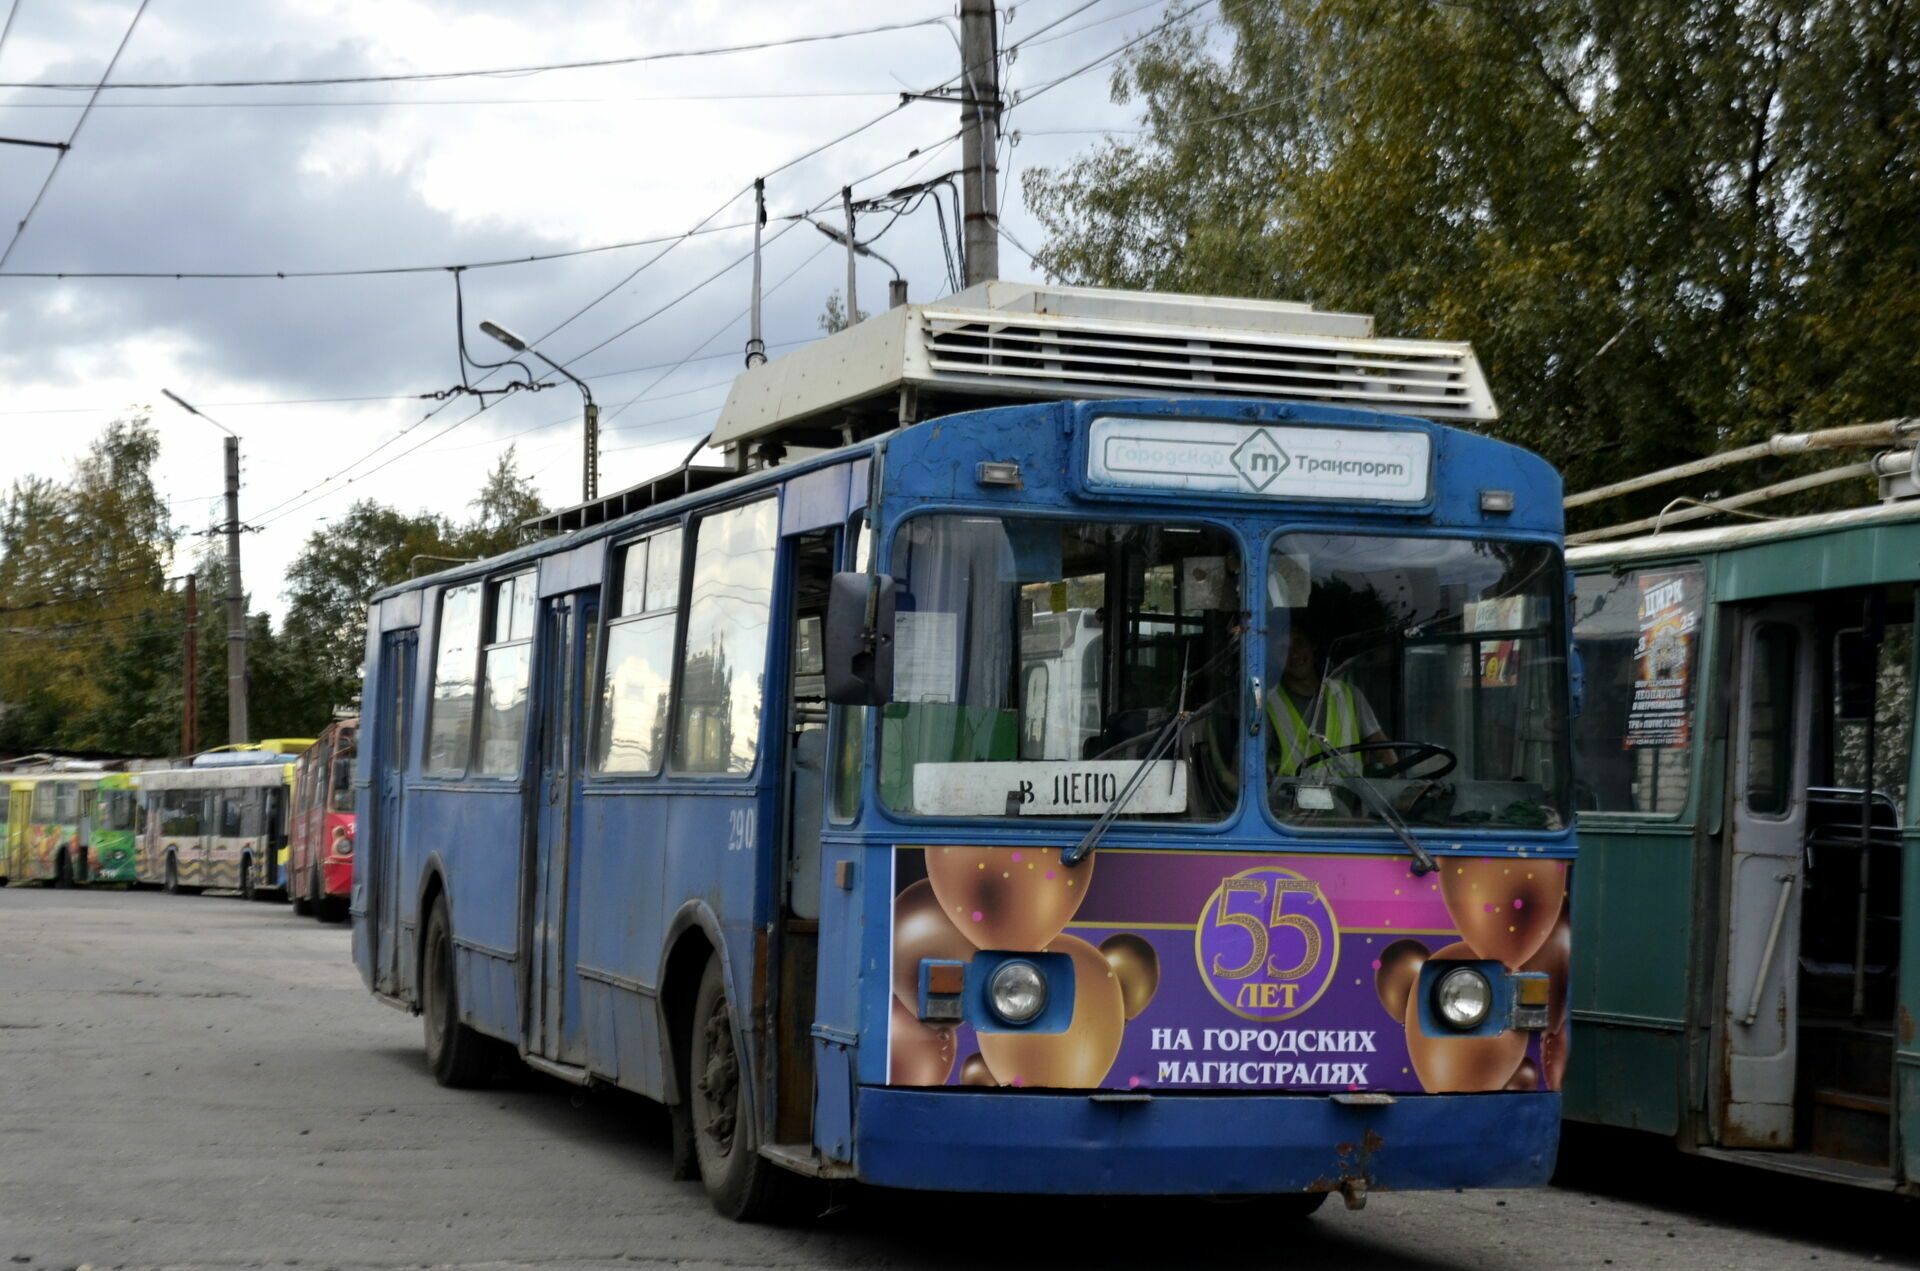 Соцсети: кондуктор троллейбуса в Петрозаводске высадила ребенка из-за ошибки оплаты